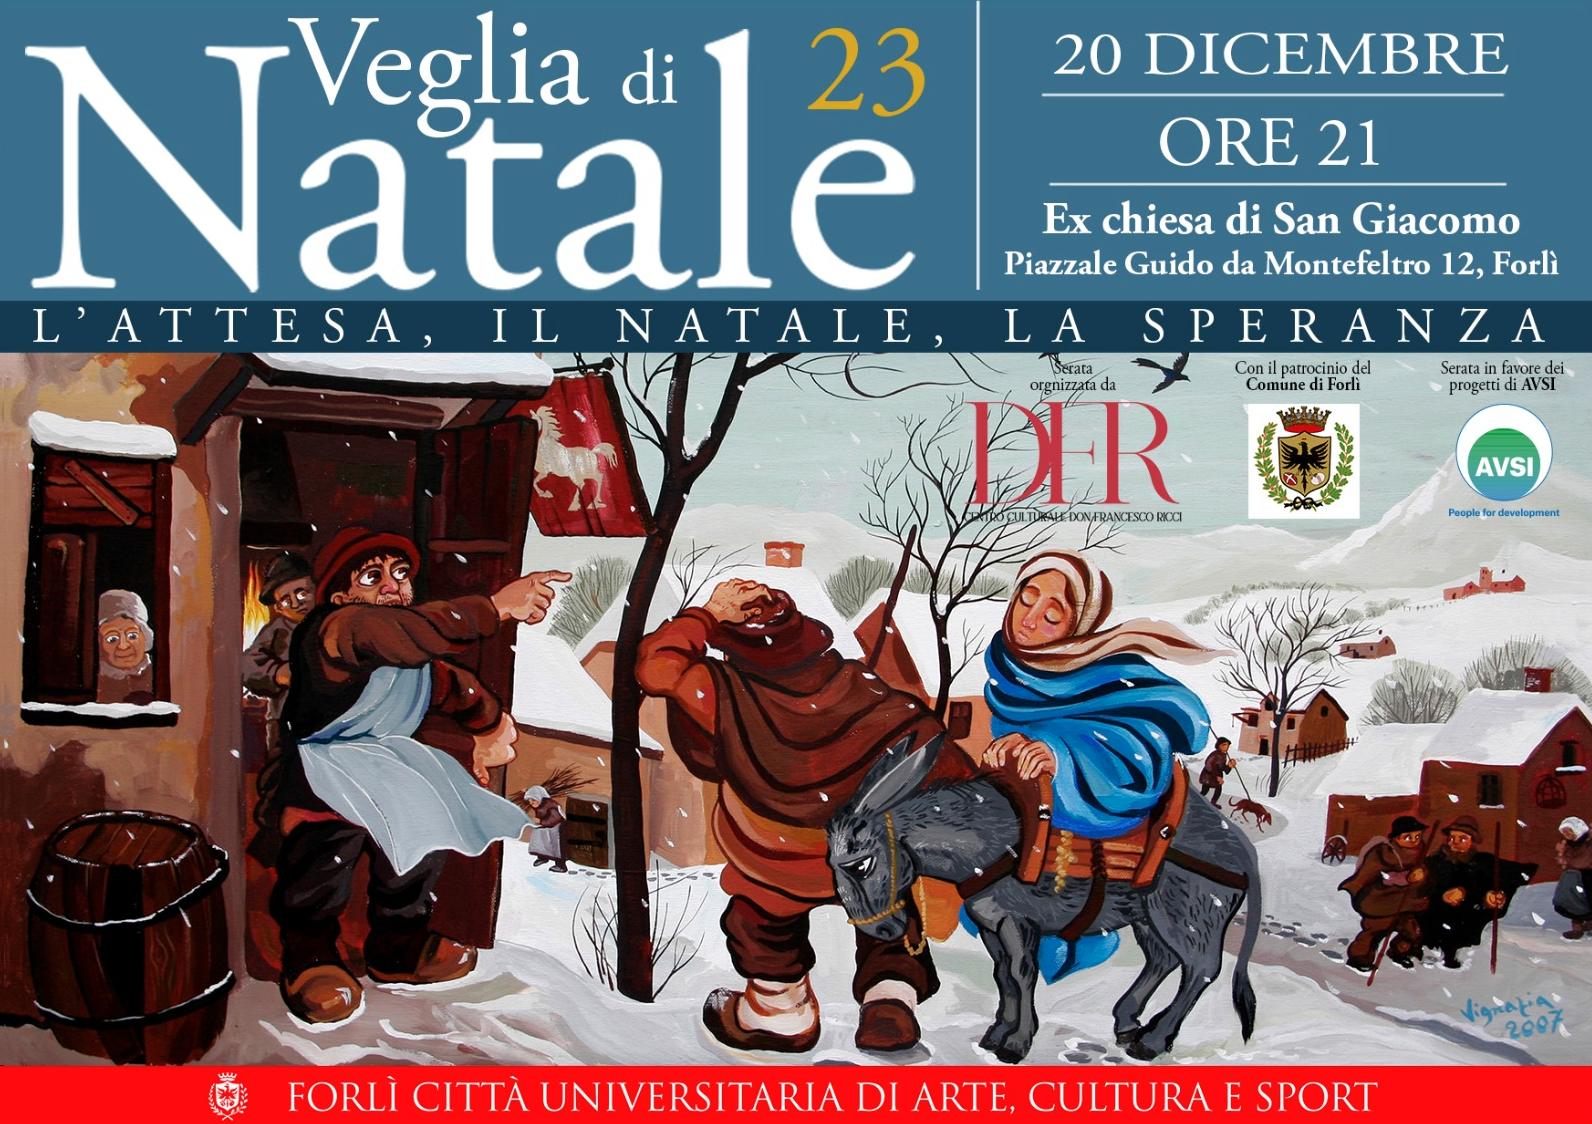 Featured image for “Forlì: Veglia di Natale”